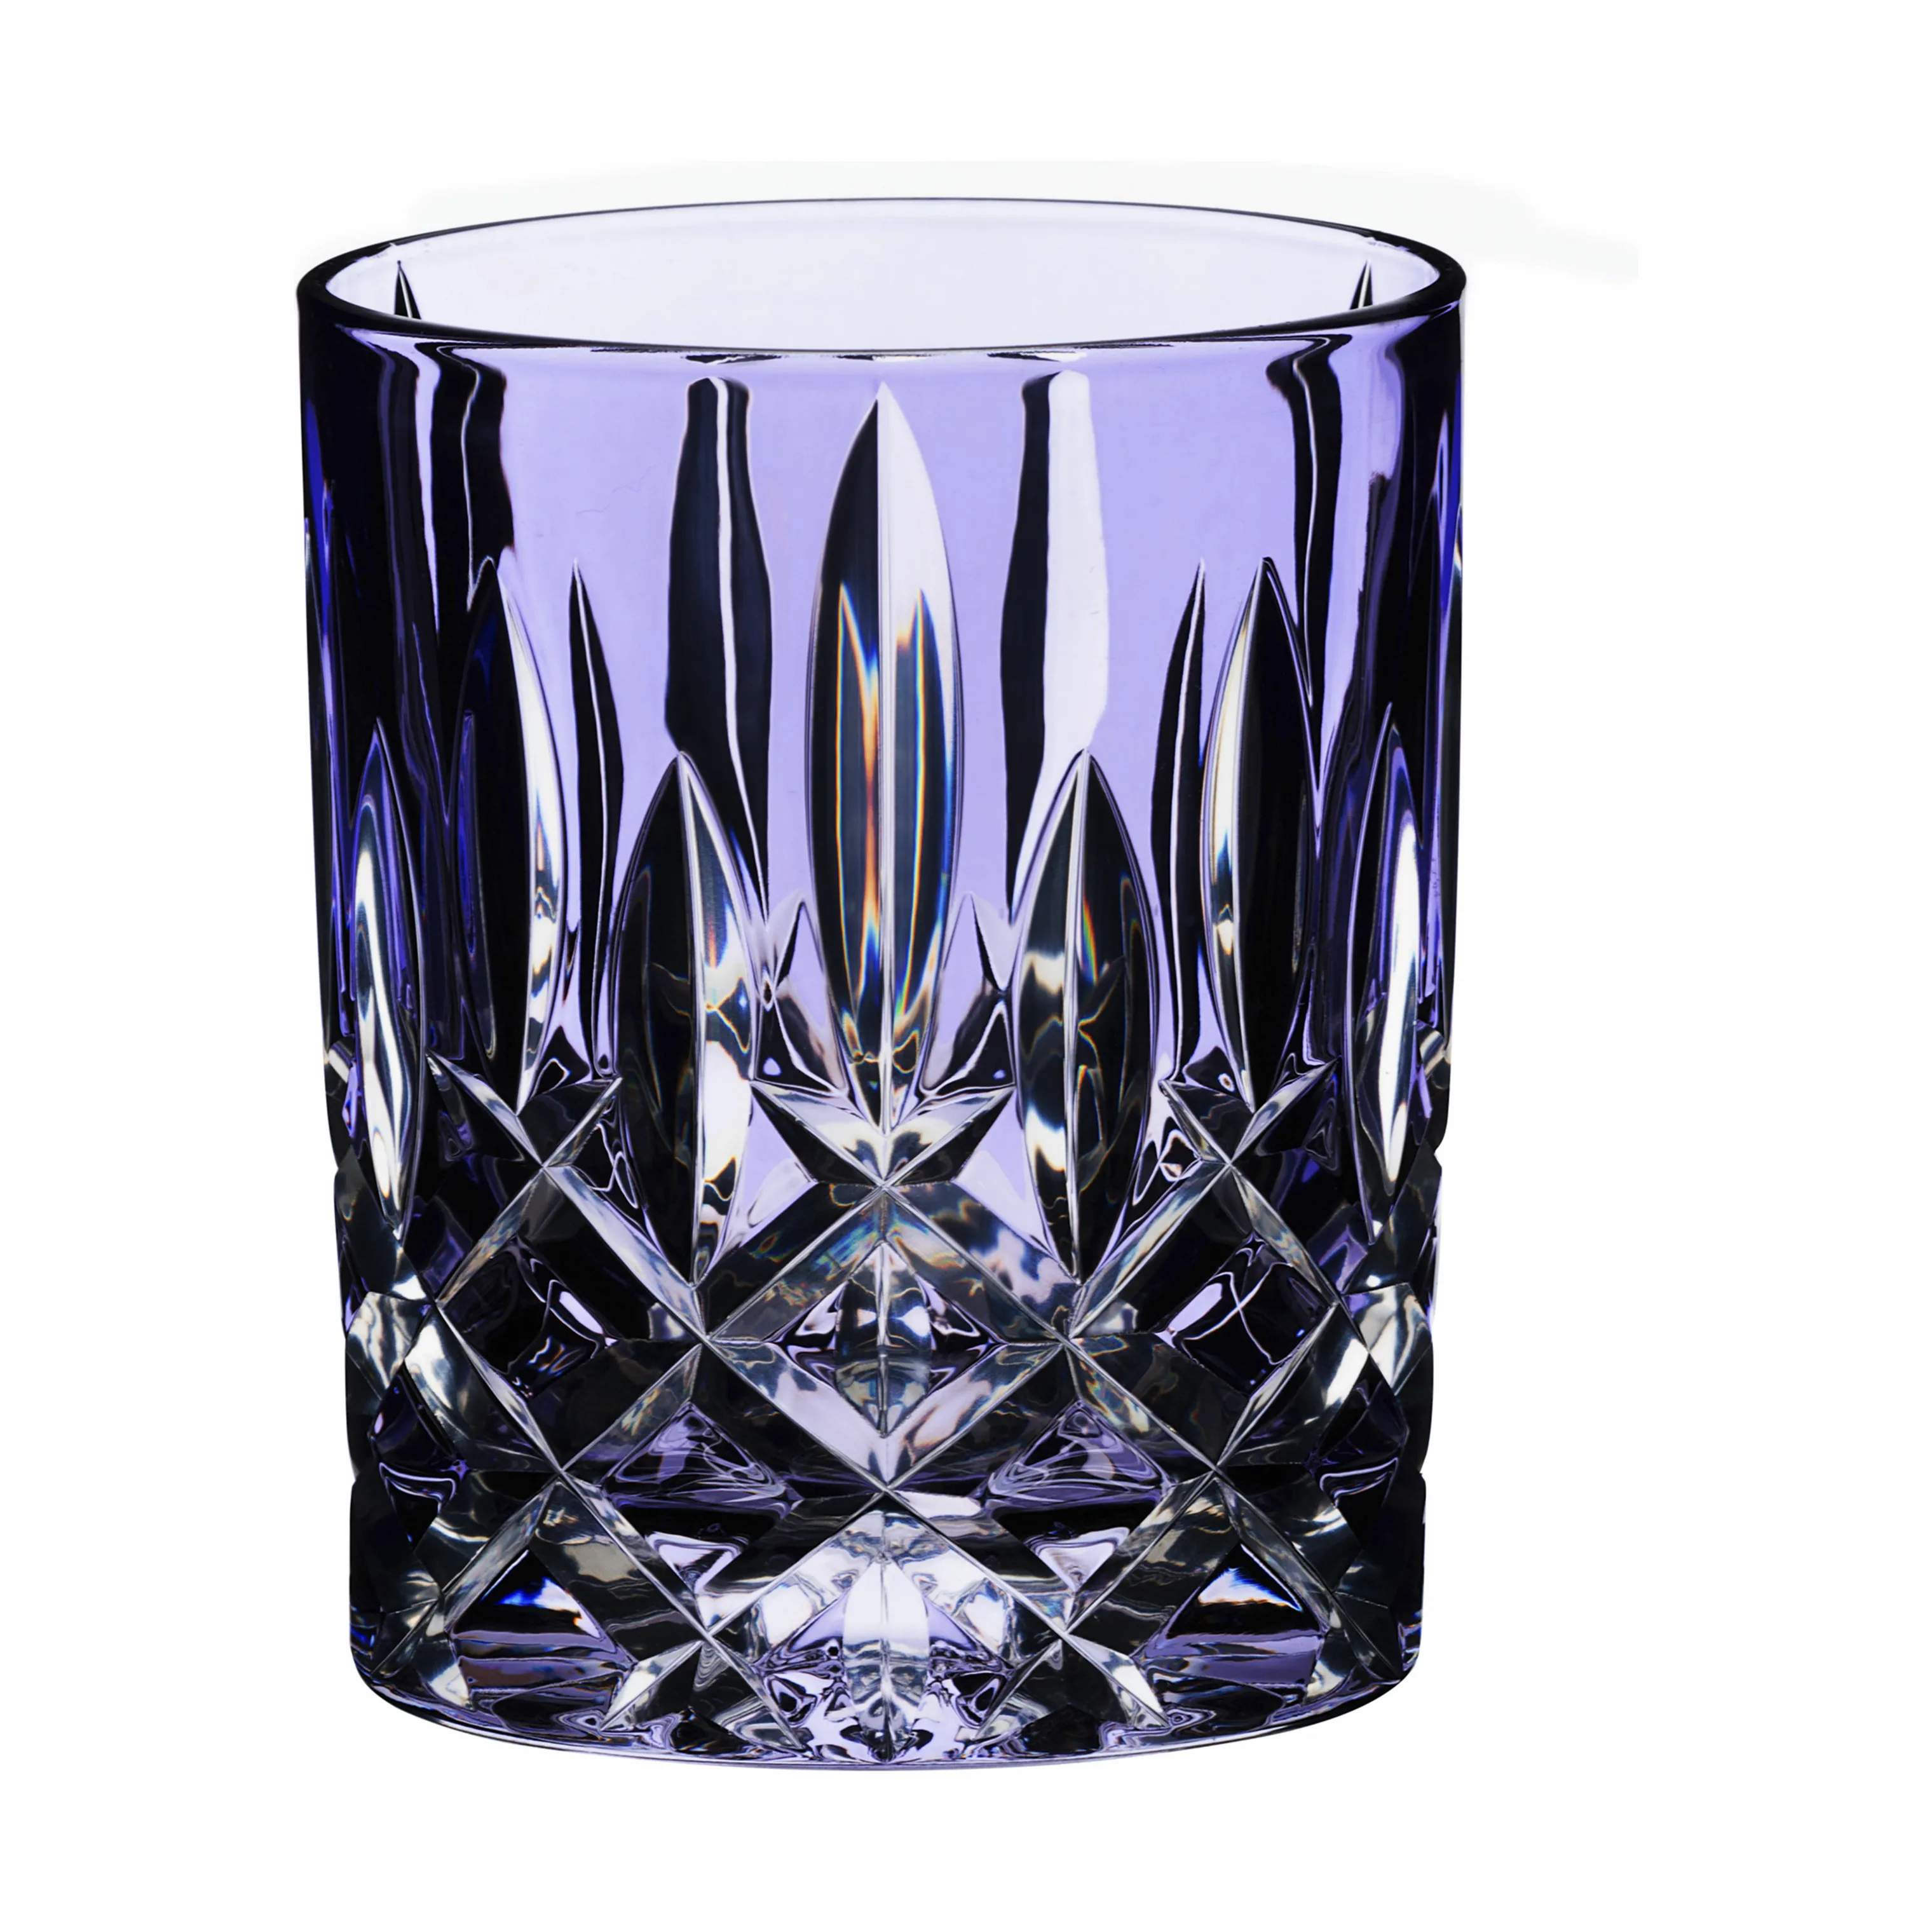 Laudon Vandglas, violet, large